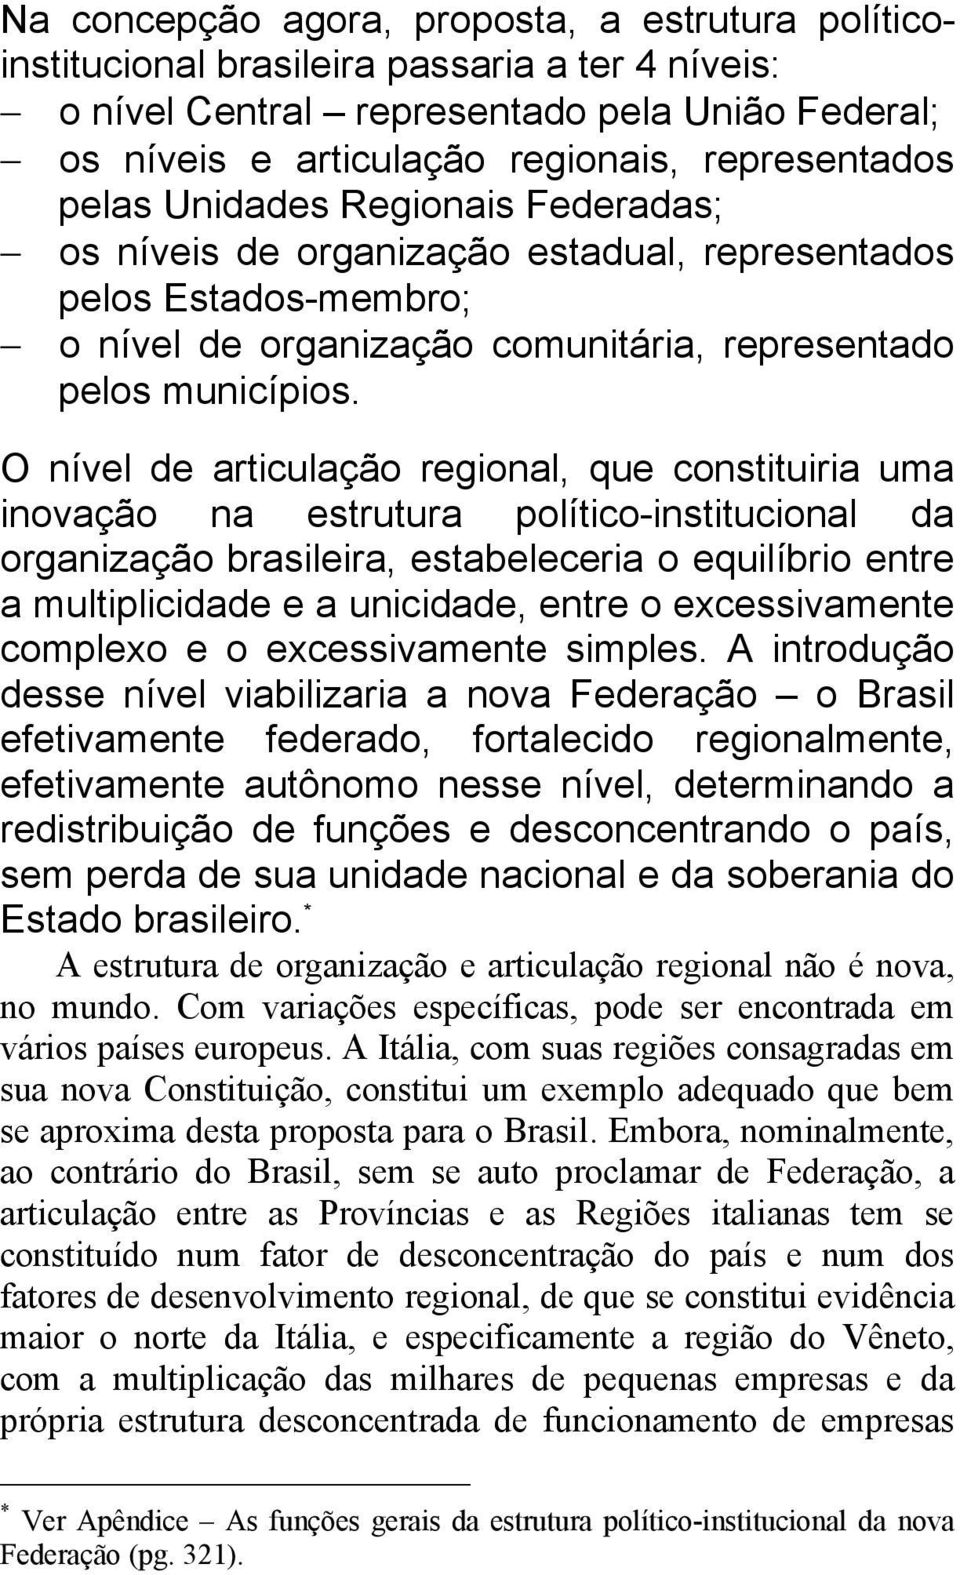 O nível de articulação regional, que constituiria uma inovação na estrutura político-institucional da organização brasileira, estabeleceria o equilíbrio entre a multiplicidade e a unicidade, entre o